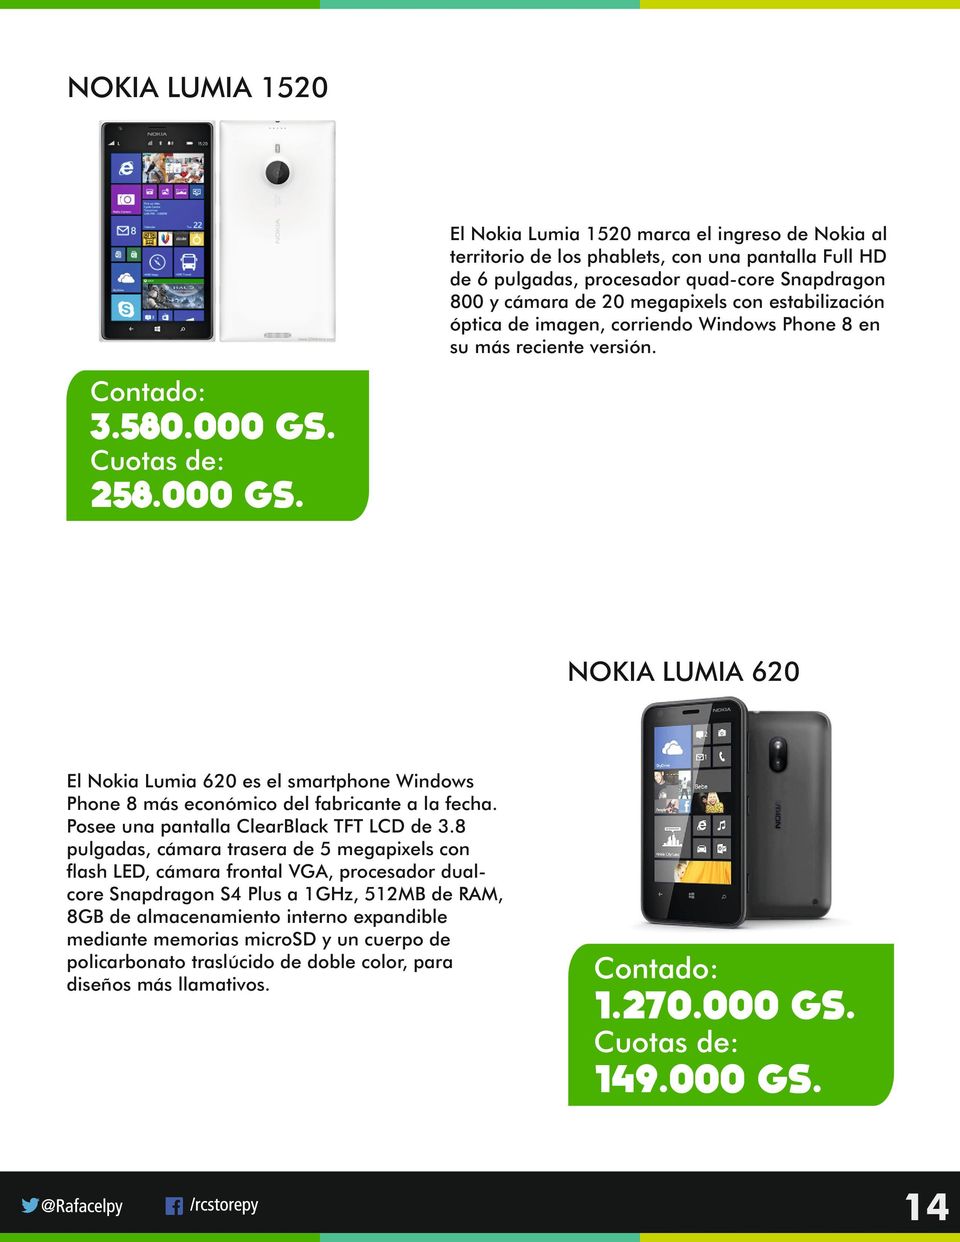 258.000 GS. NOKIA LUMIA 620 El Nokia Lumia 620 es el smartphone Windows Phone 8 más económico del fabricante a la fecha. Posee una pantalla ClearBlack TFT LCD de 3.